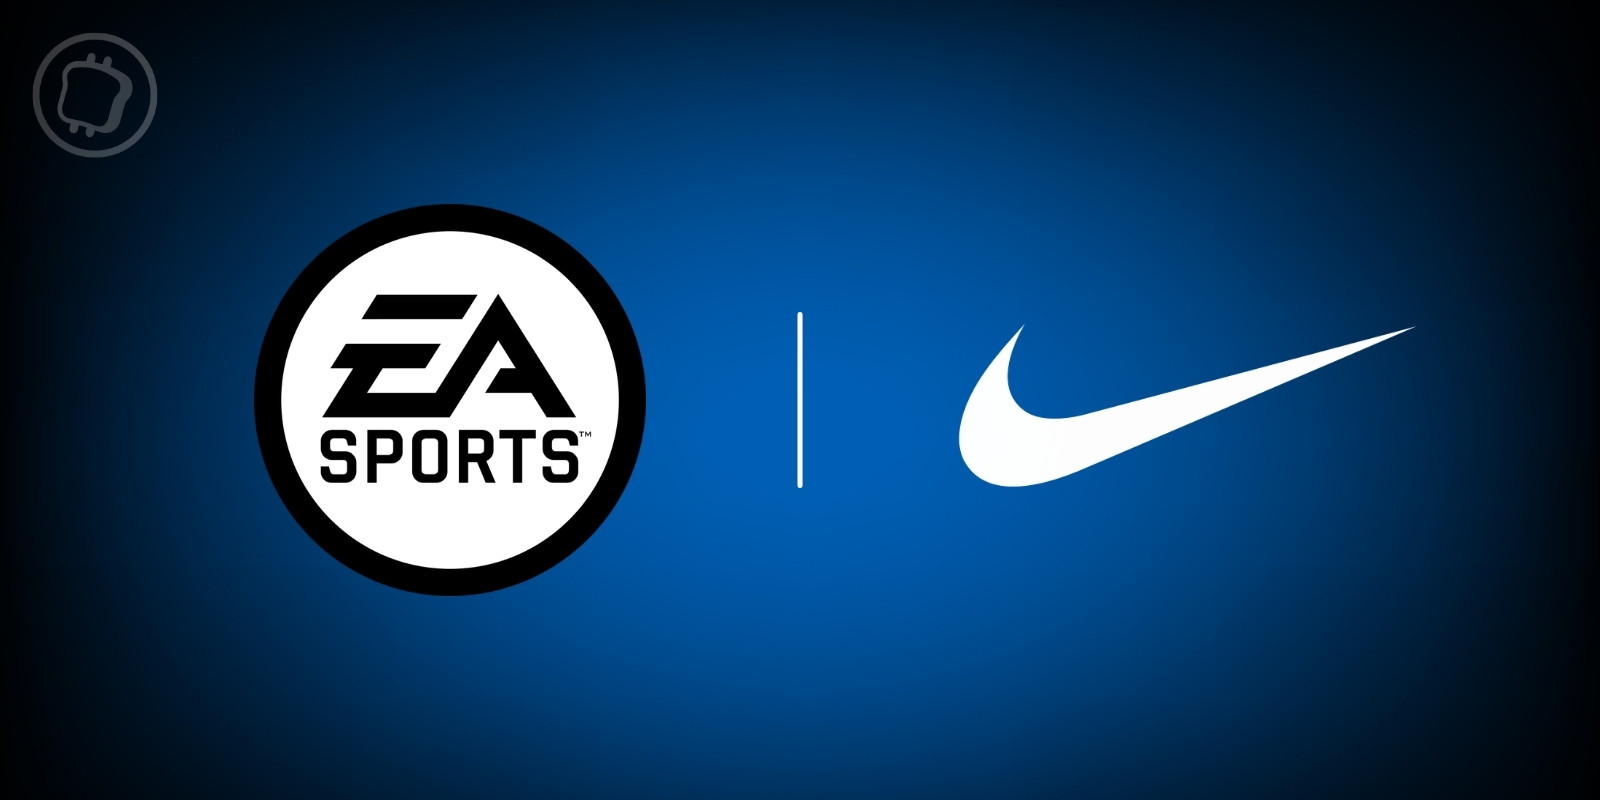 Les NFTs de Nike seront bientôt intégrés aux jeux d'EA Sports